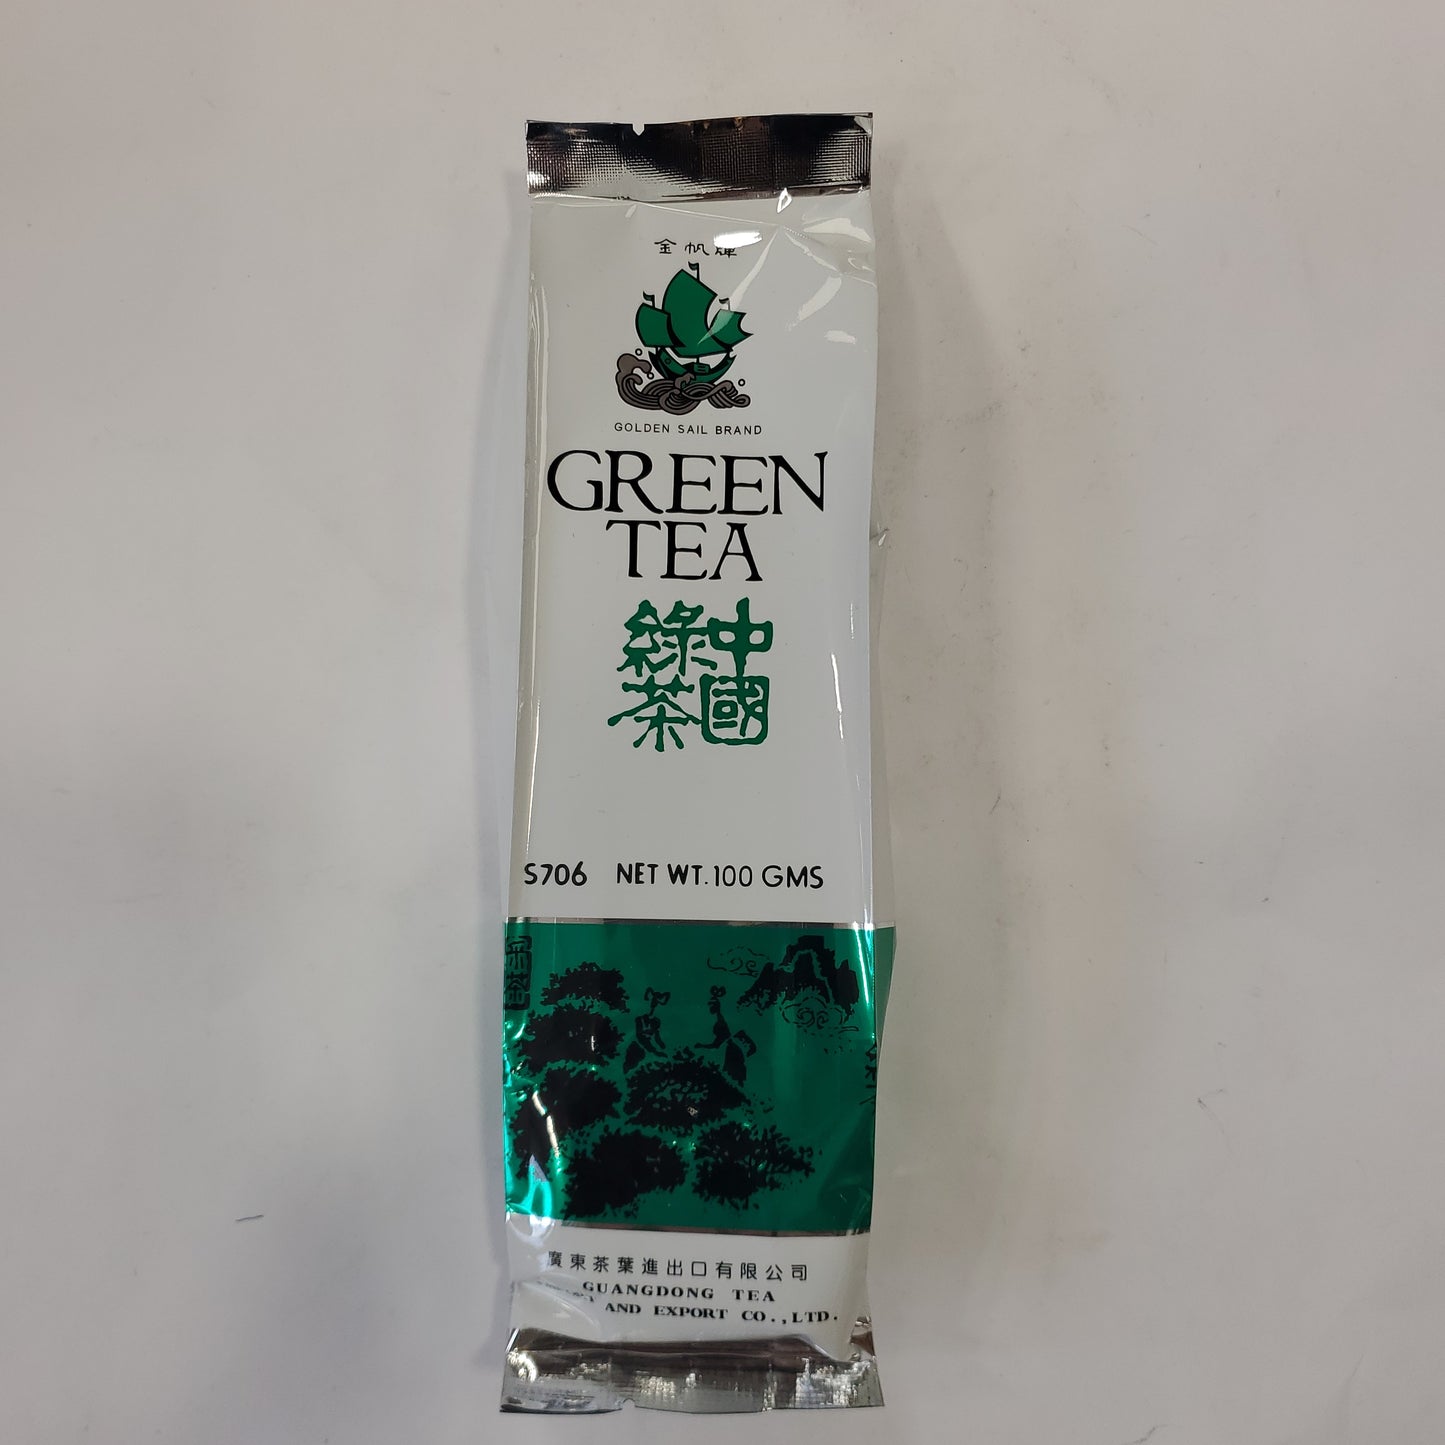 Golden Sail Green Tea 100g